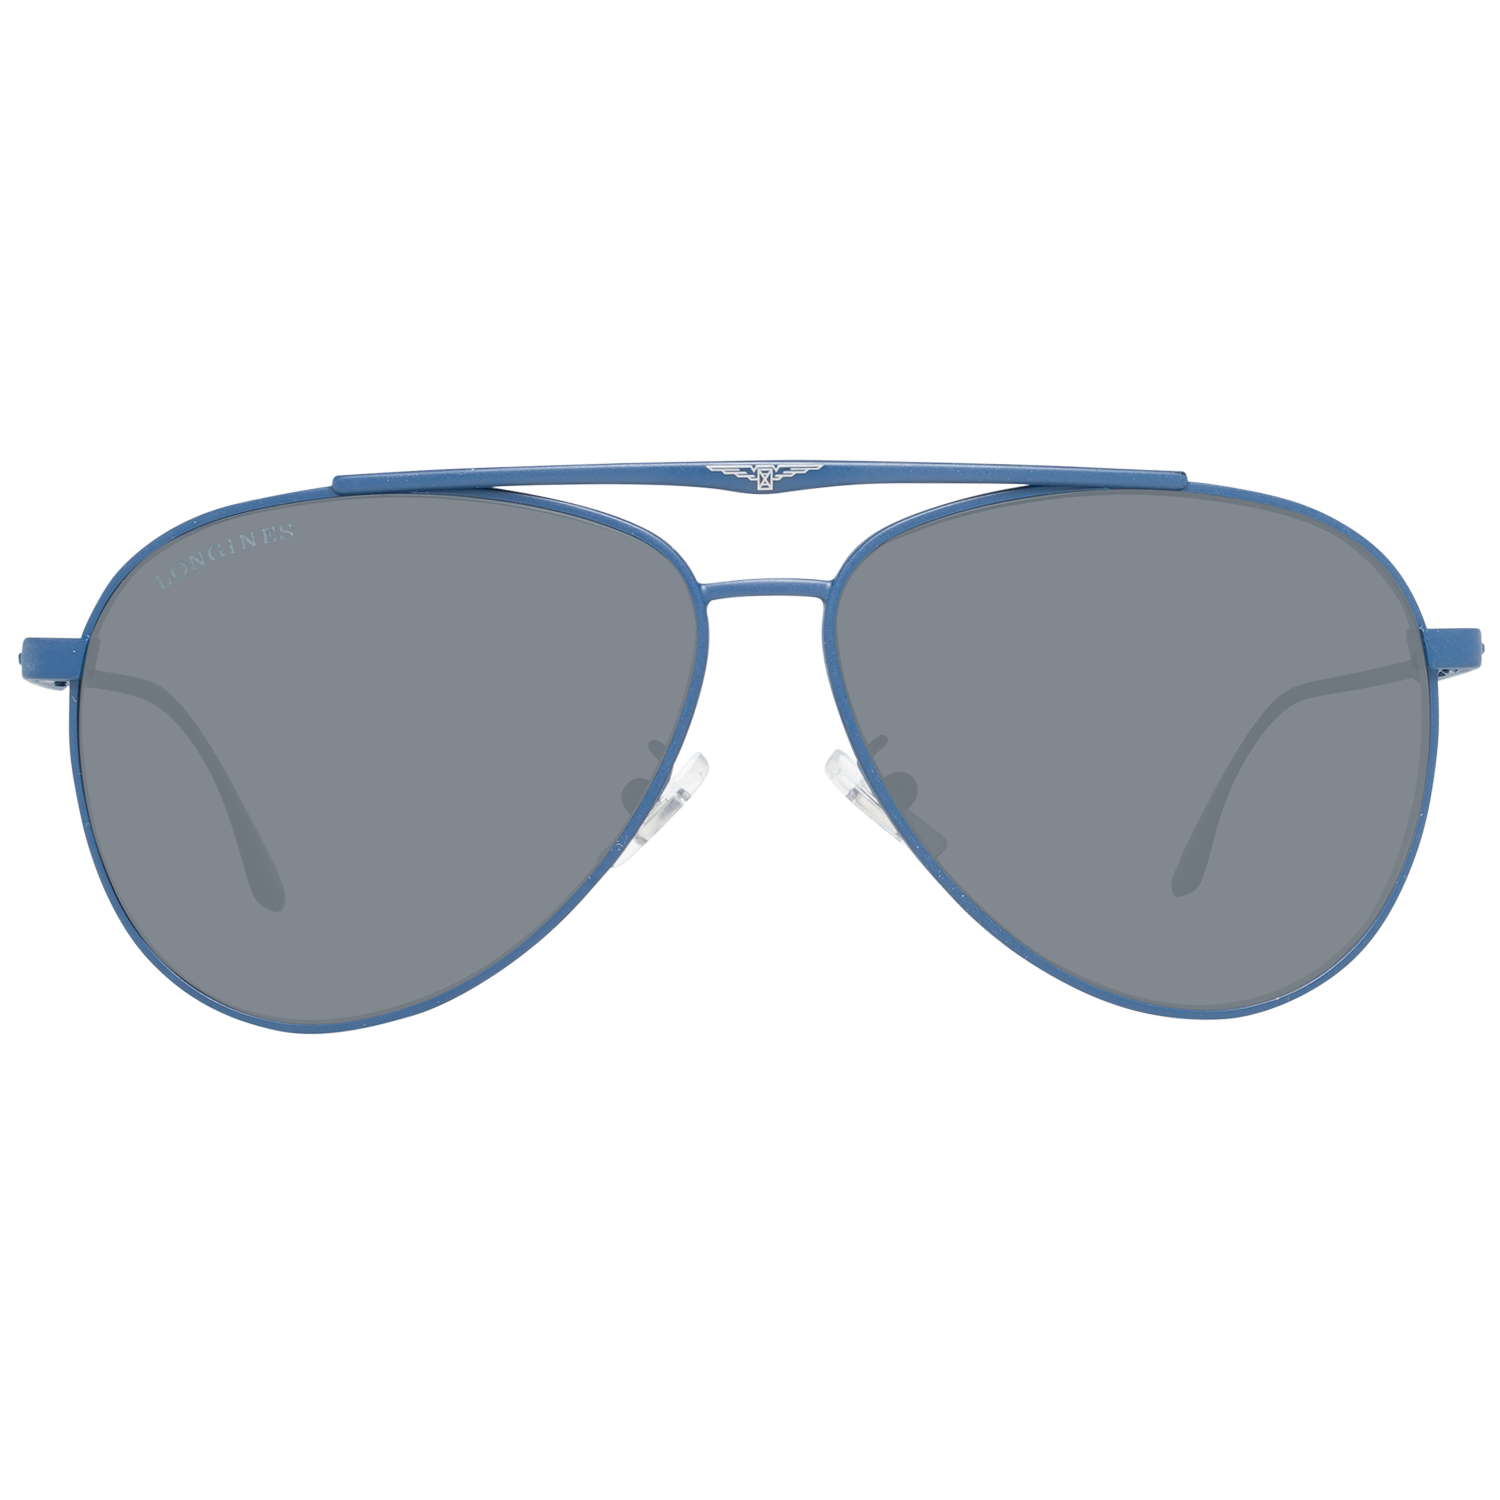 Longines Sunglasses Longines Sunglasses LG0005-H 91D 59 Polarized Eyeglasses Eyewear UK USA Australia 